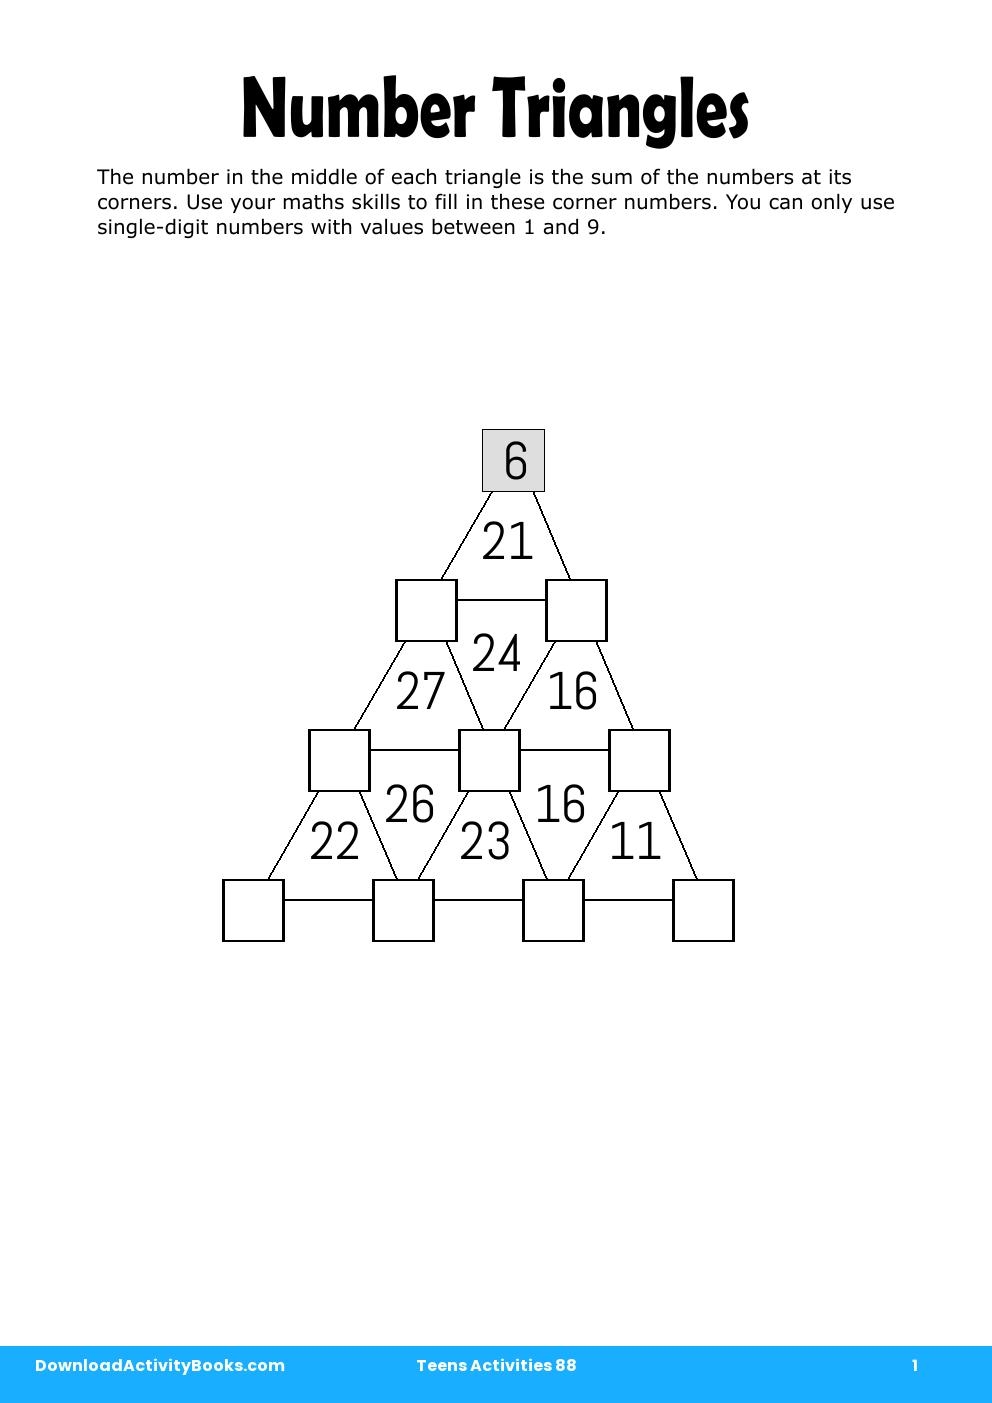 Number Triangles in Teens Activities 88